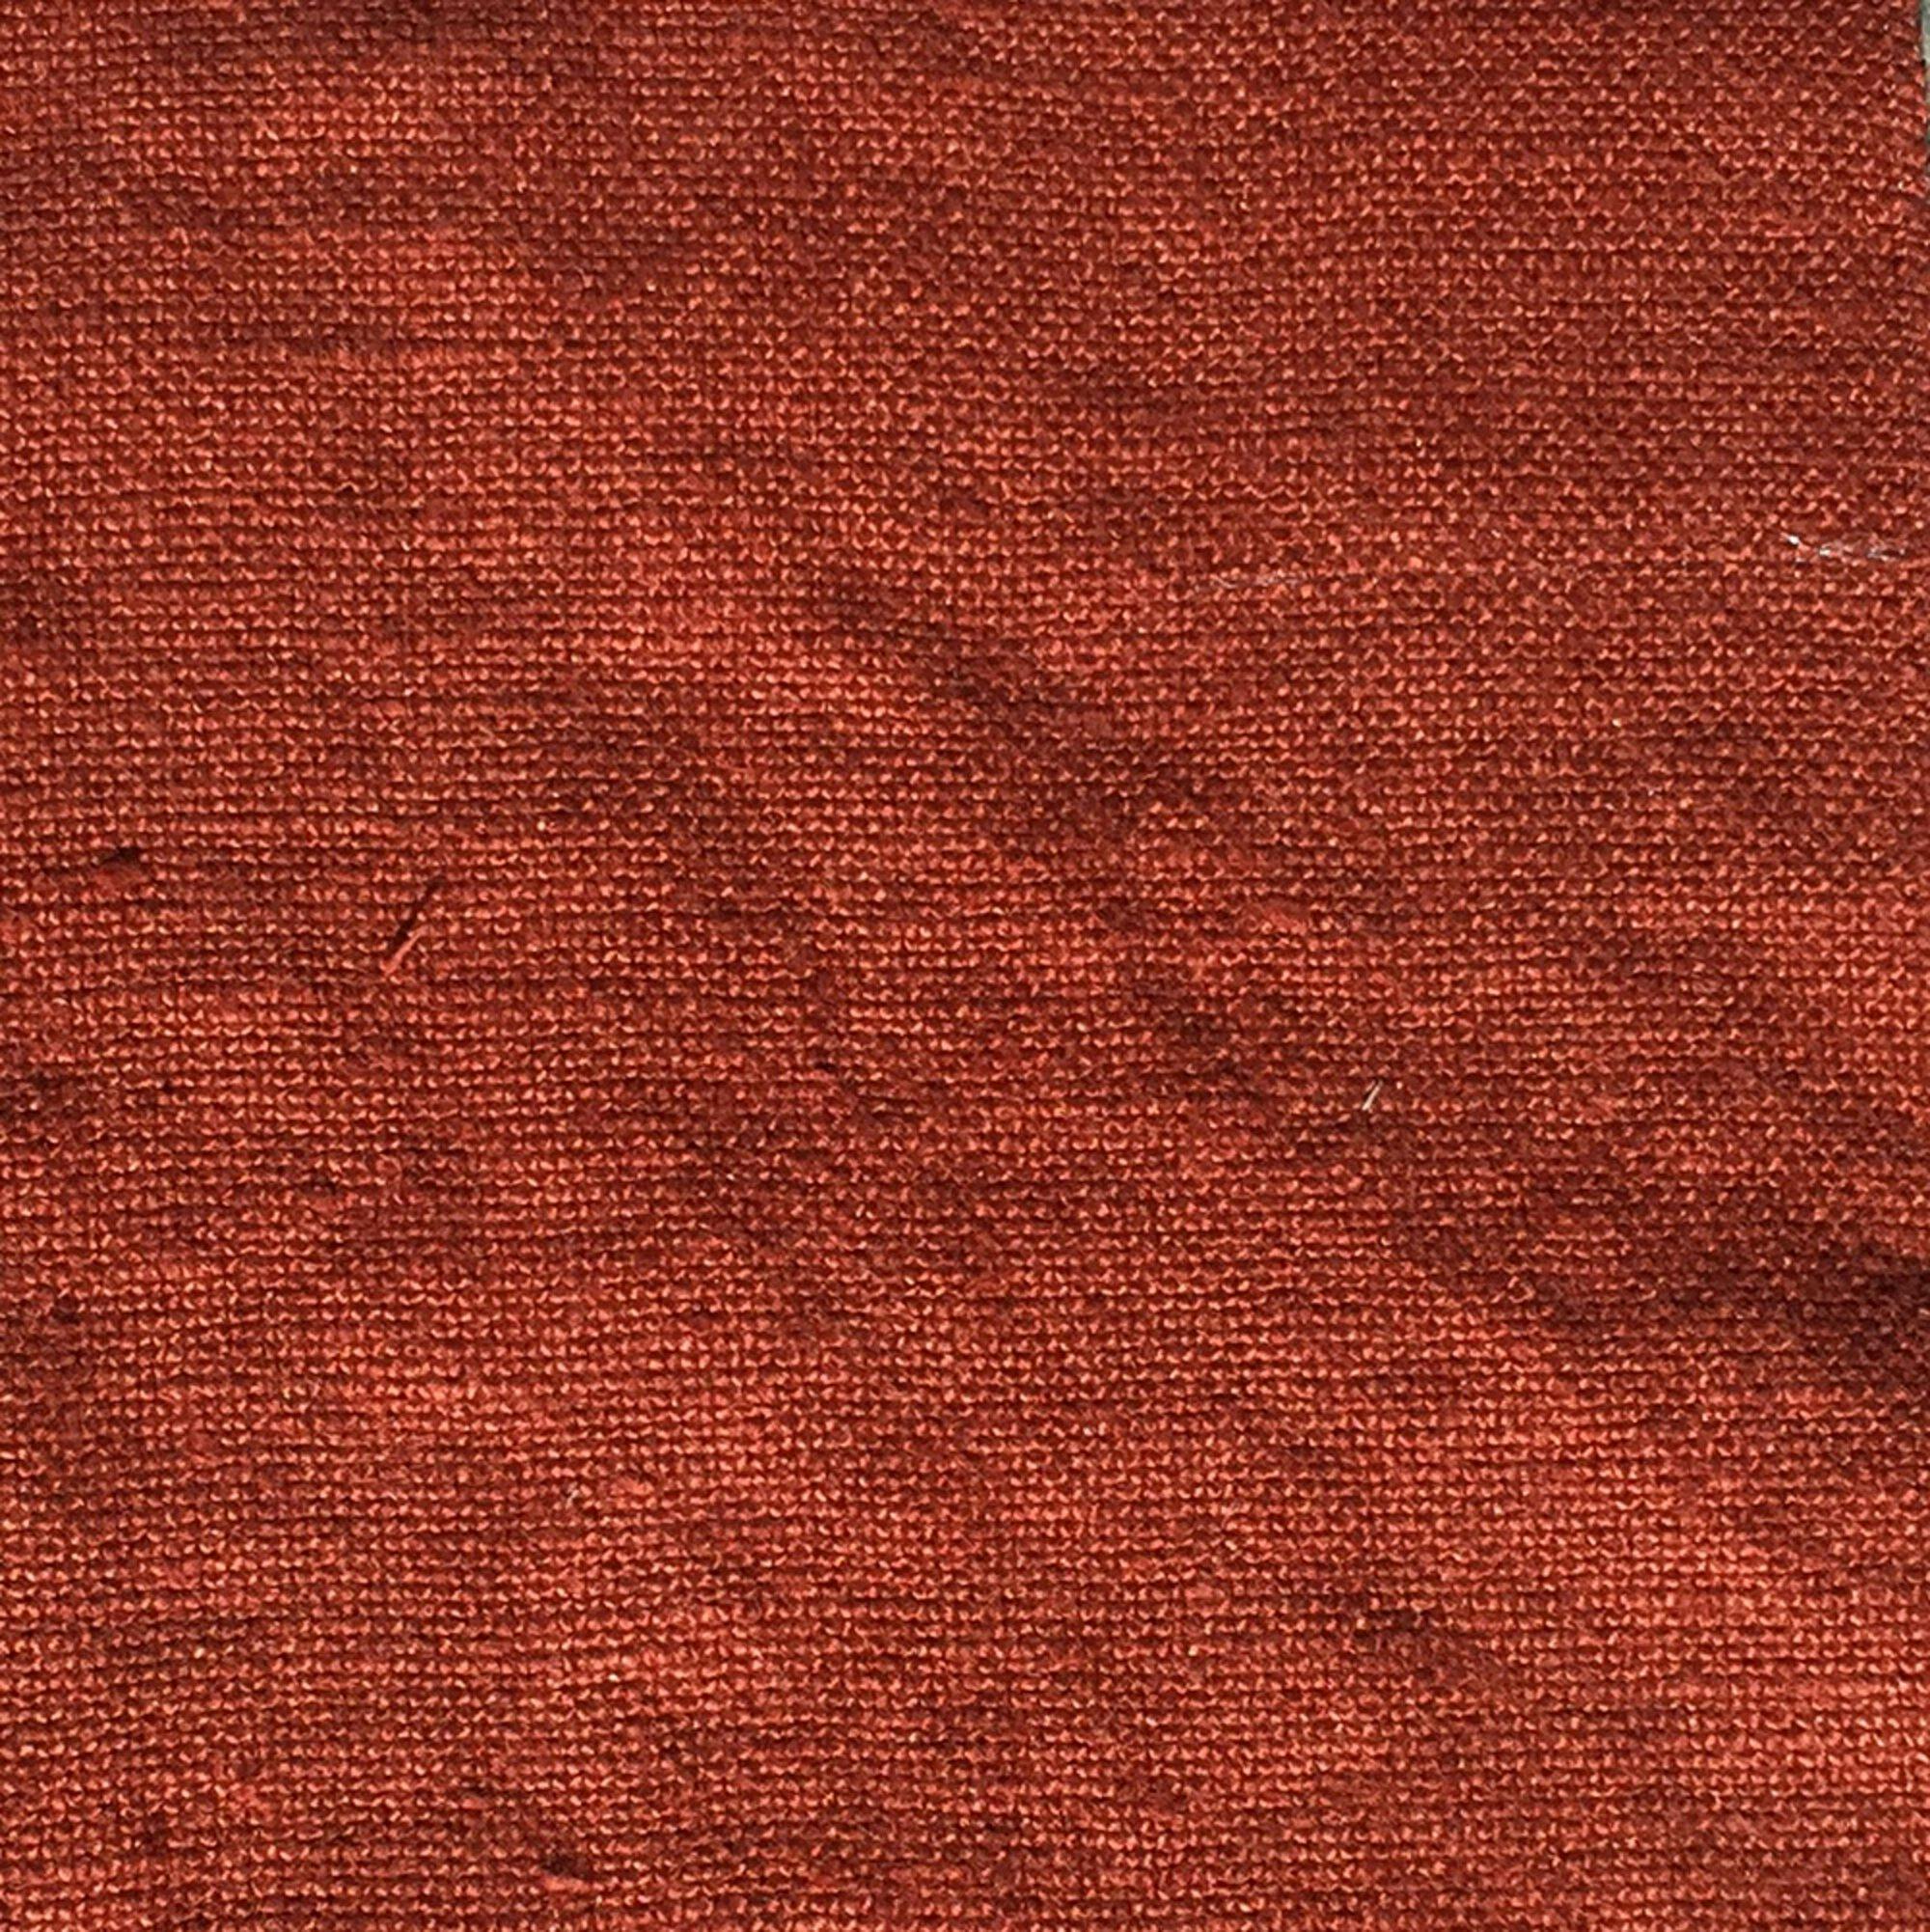 Kalahari curtain fabric